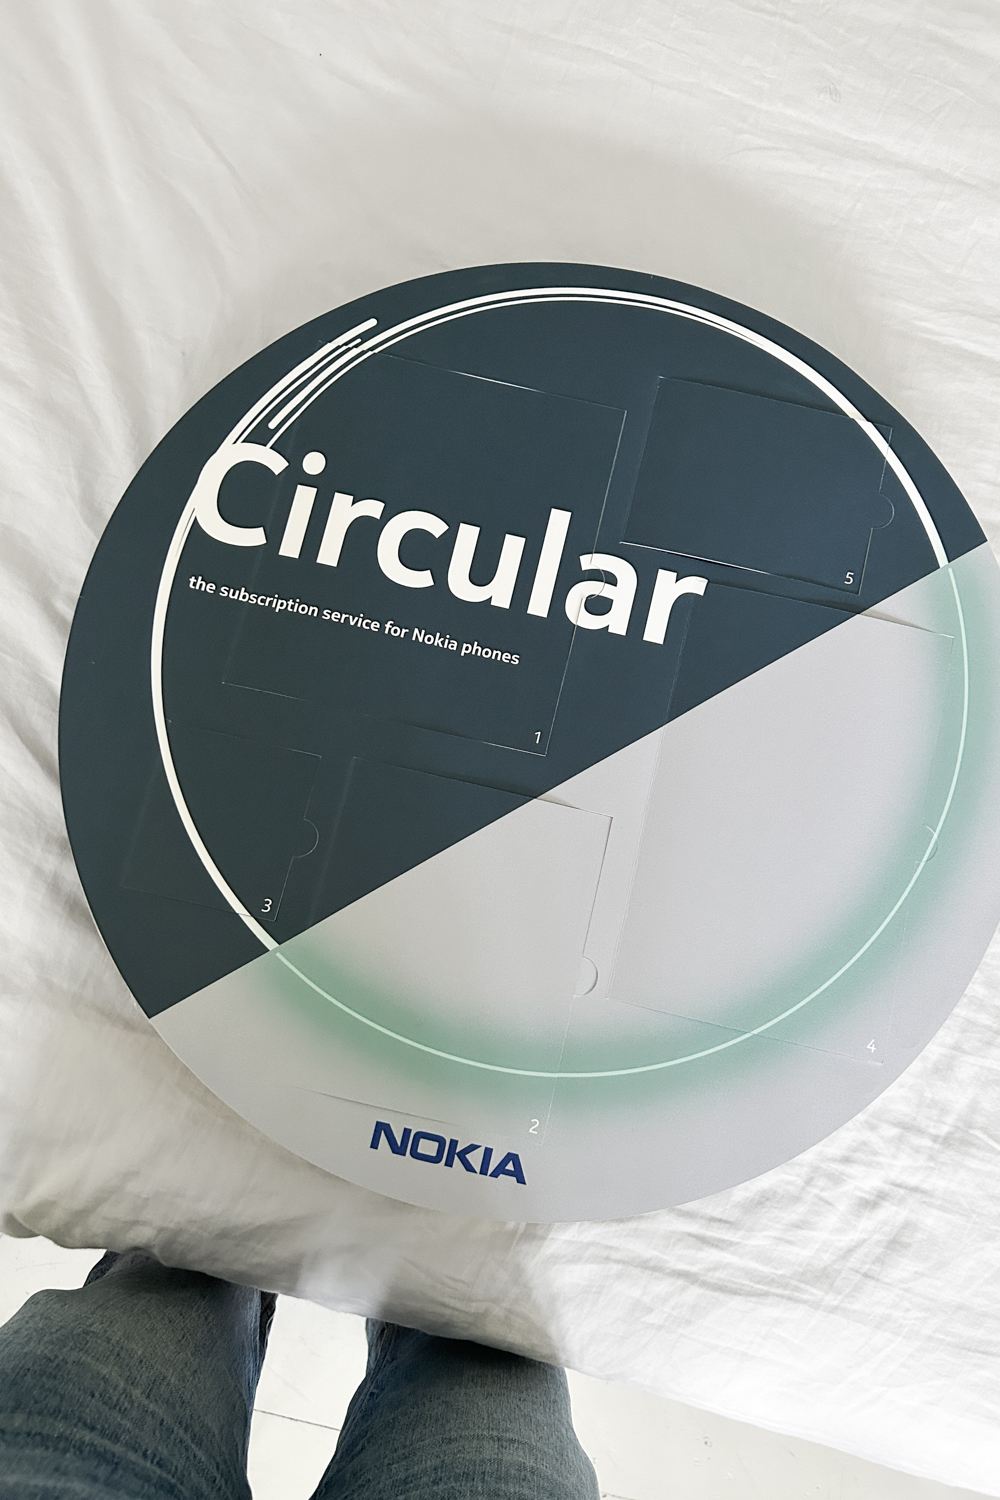 Nokia Circular promotional calendar